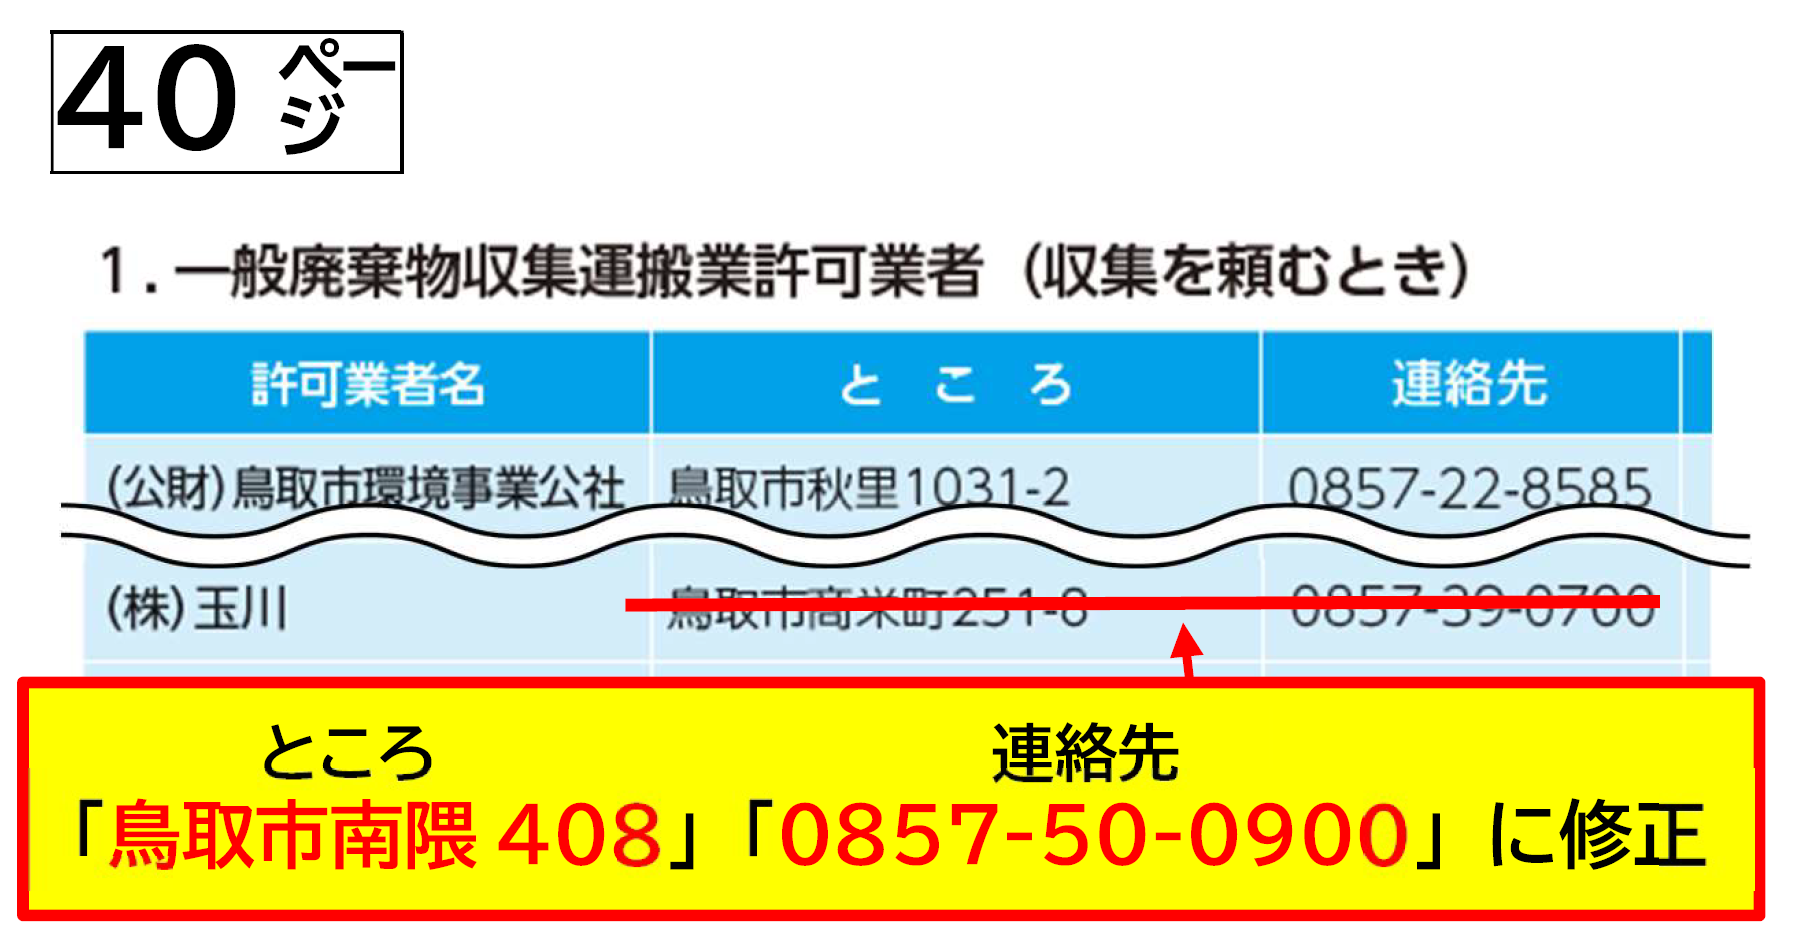 40ページの許可一覧の株式会社玉川の所在地と電話番号が変更。住所は鳥取市南隈408、電話番号は0857-50-0900